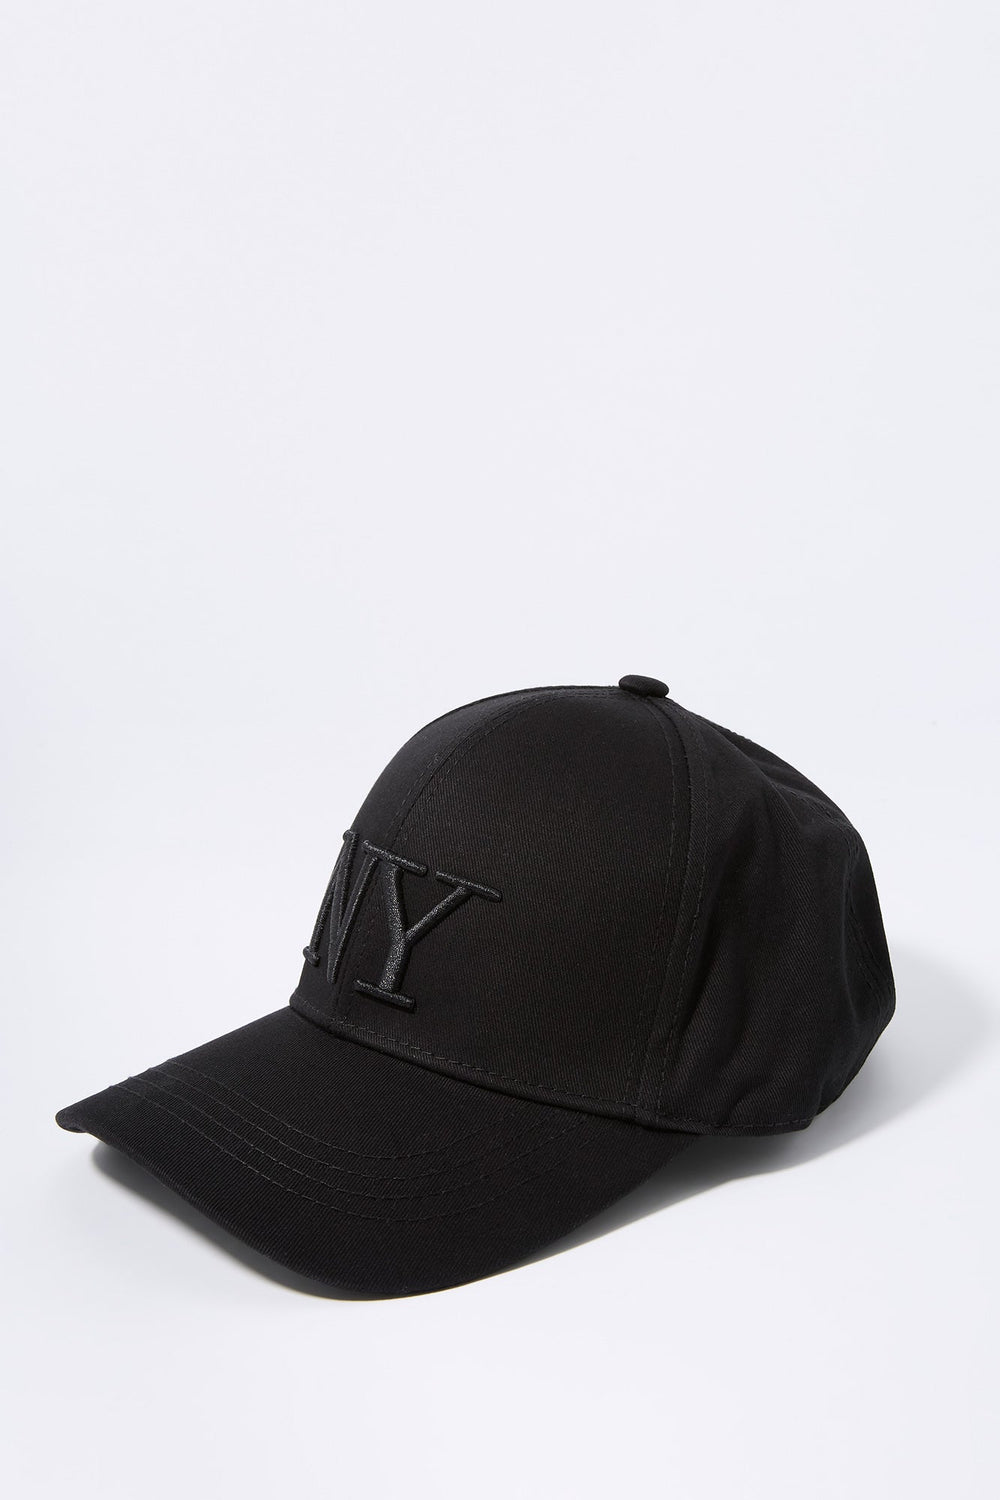 Black NY Embroidered Baseball Hat Black NY Embroidered Baseball Hat 2